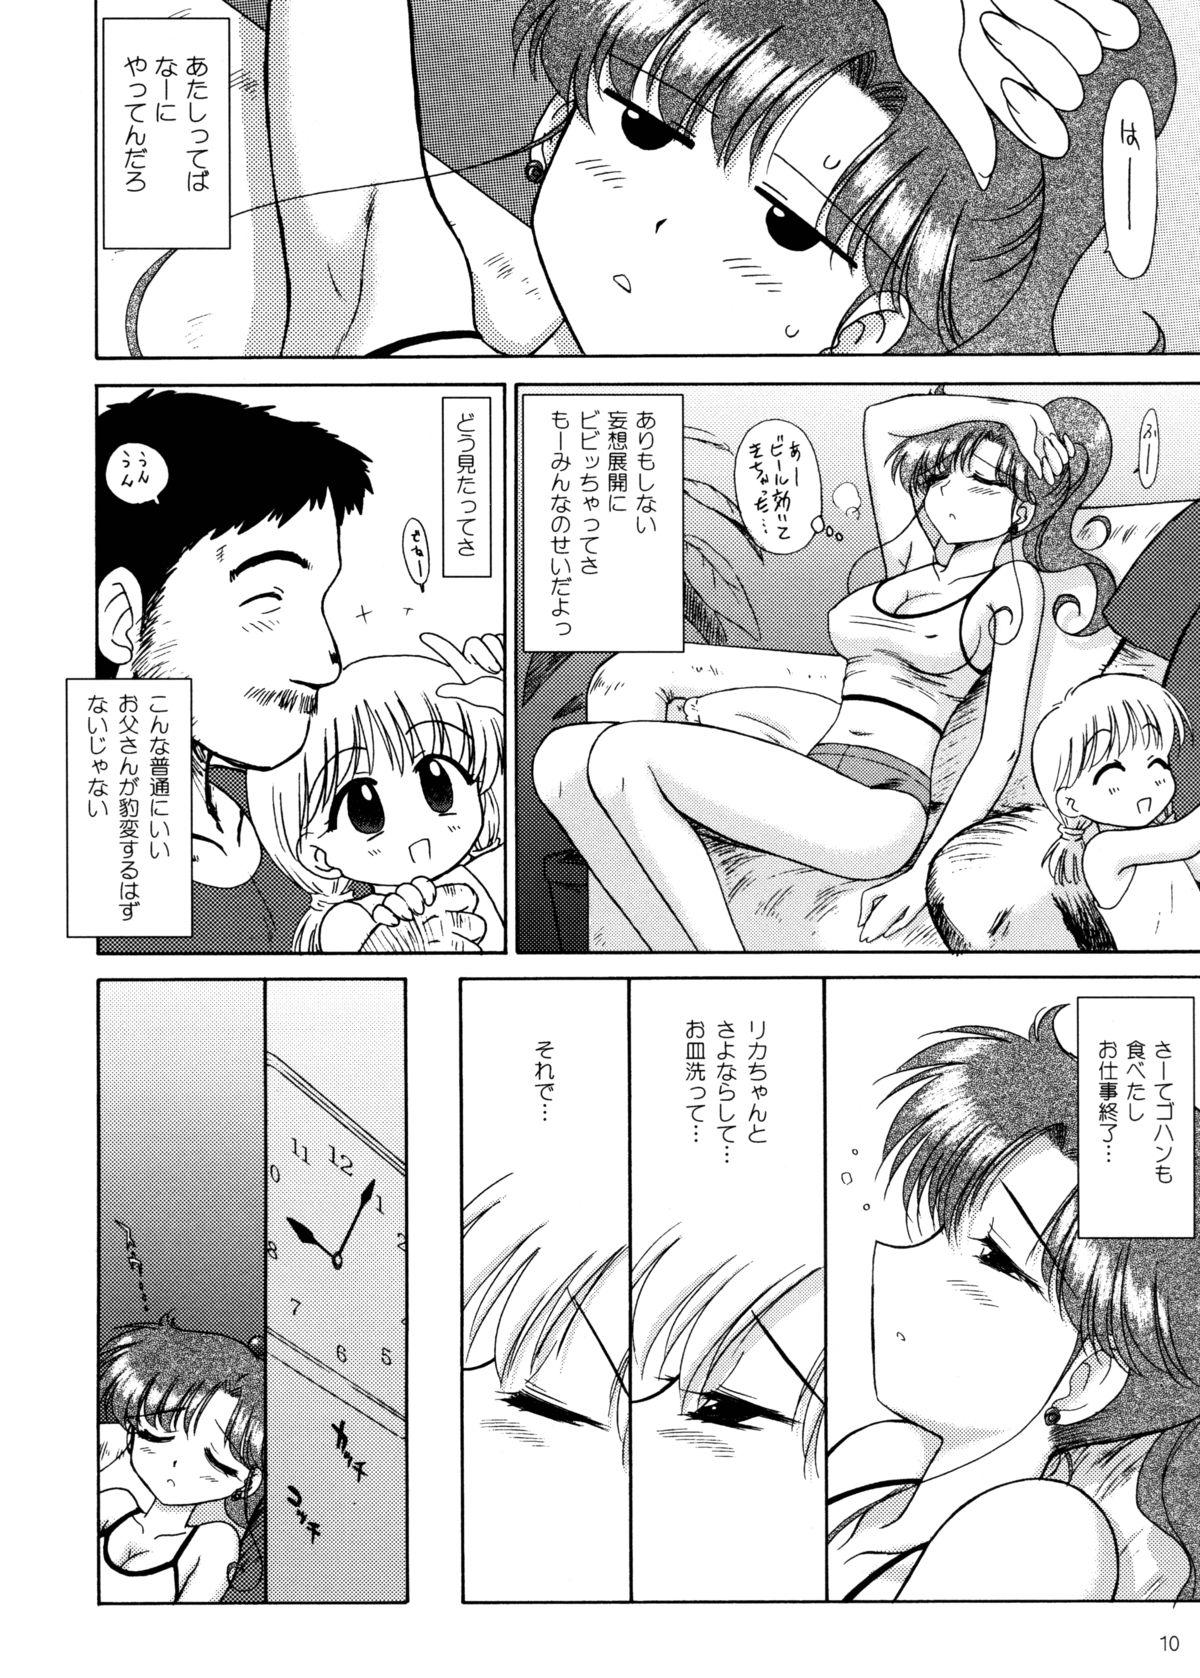 Orgasmo In a Silent Way - Sailor moon Cums - Page 9